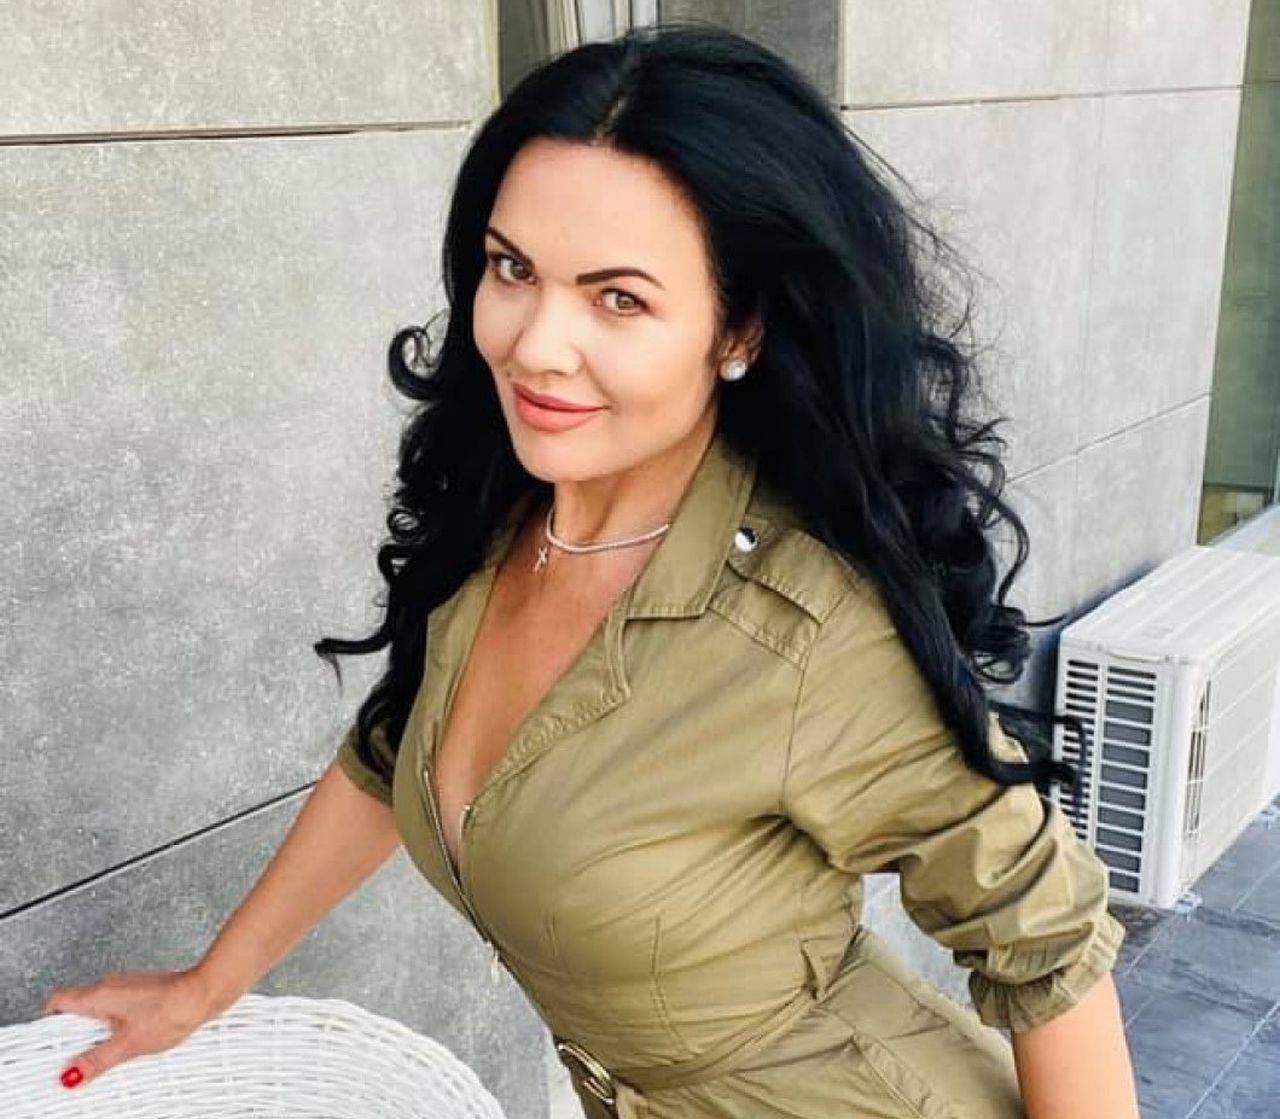 Ioana Năstase a luat o decizie clară. Soția lui Ilie Năstase a decis sa-și ierte soțul și să retragă actele de divorț